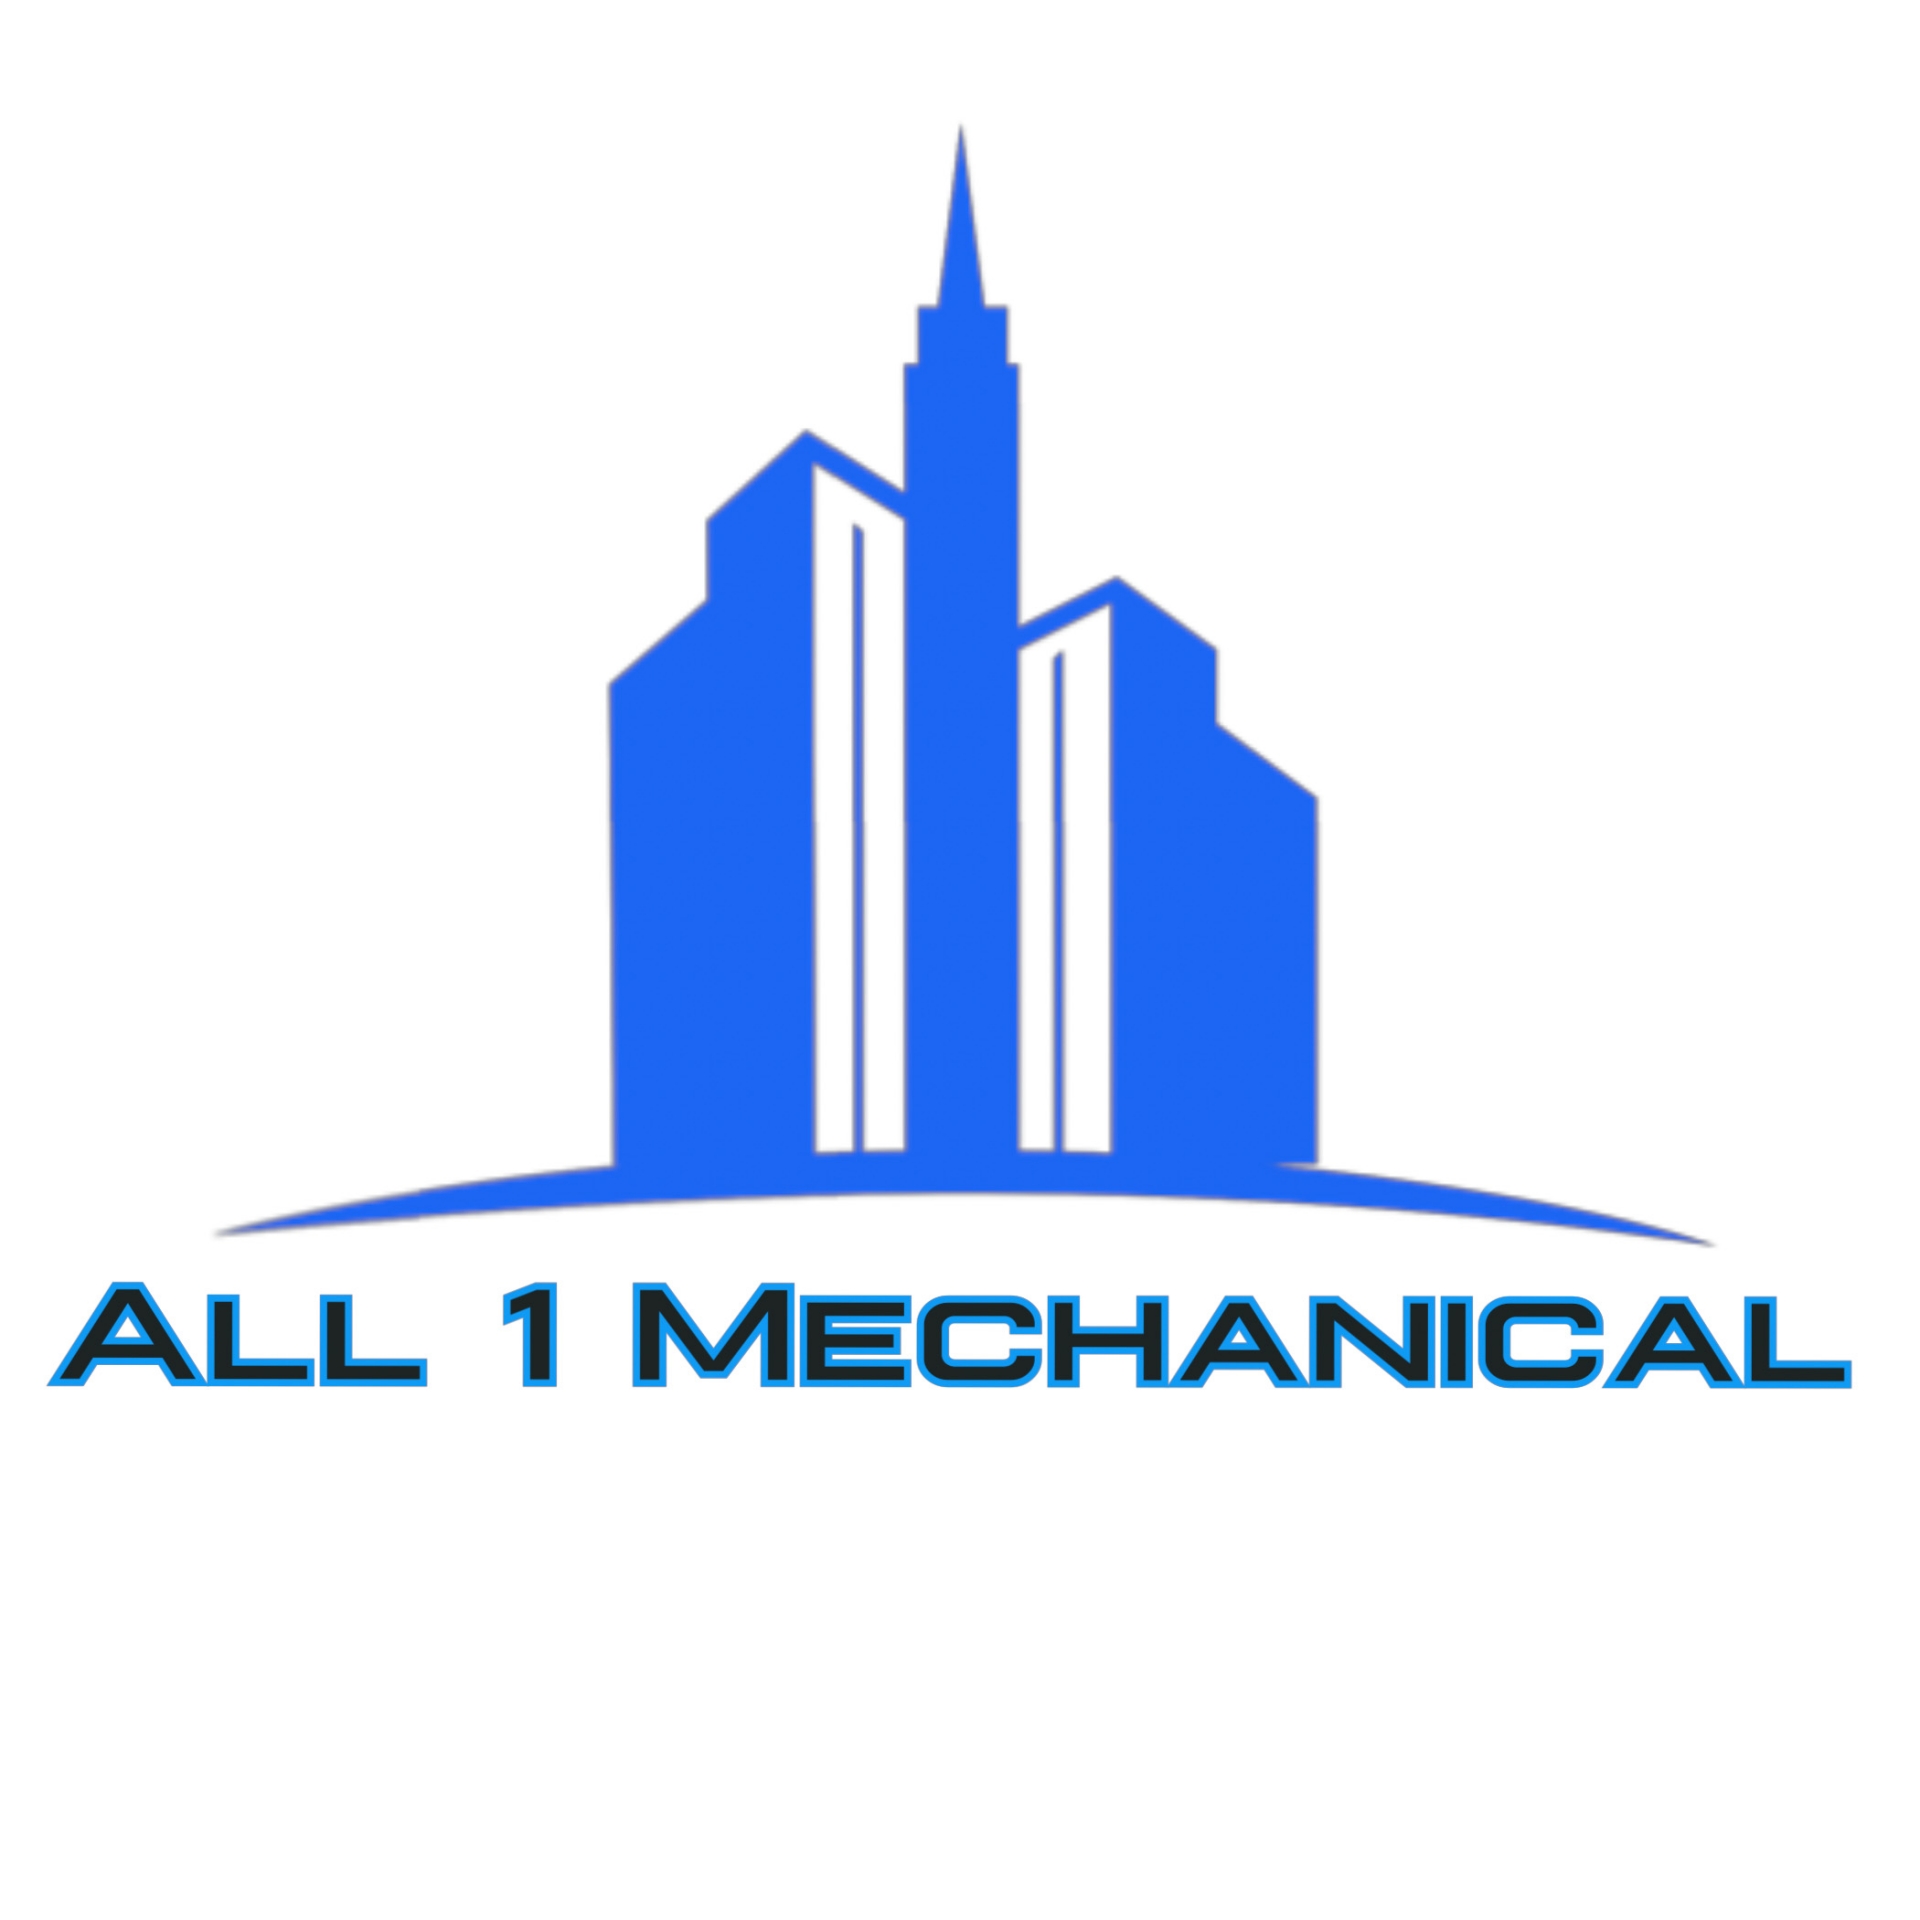 All 1 Mechanical LLC company logo